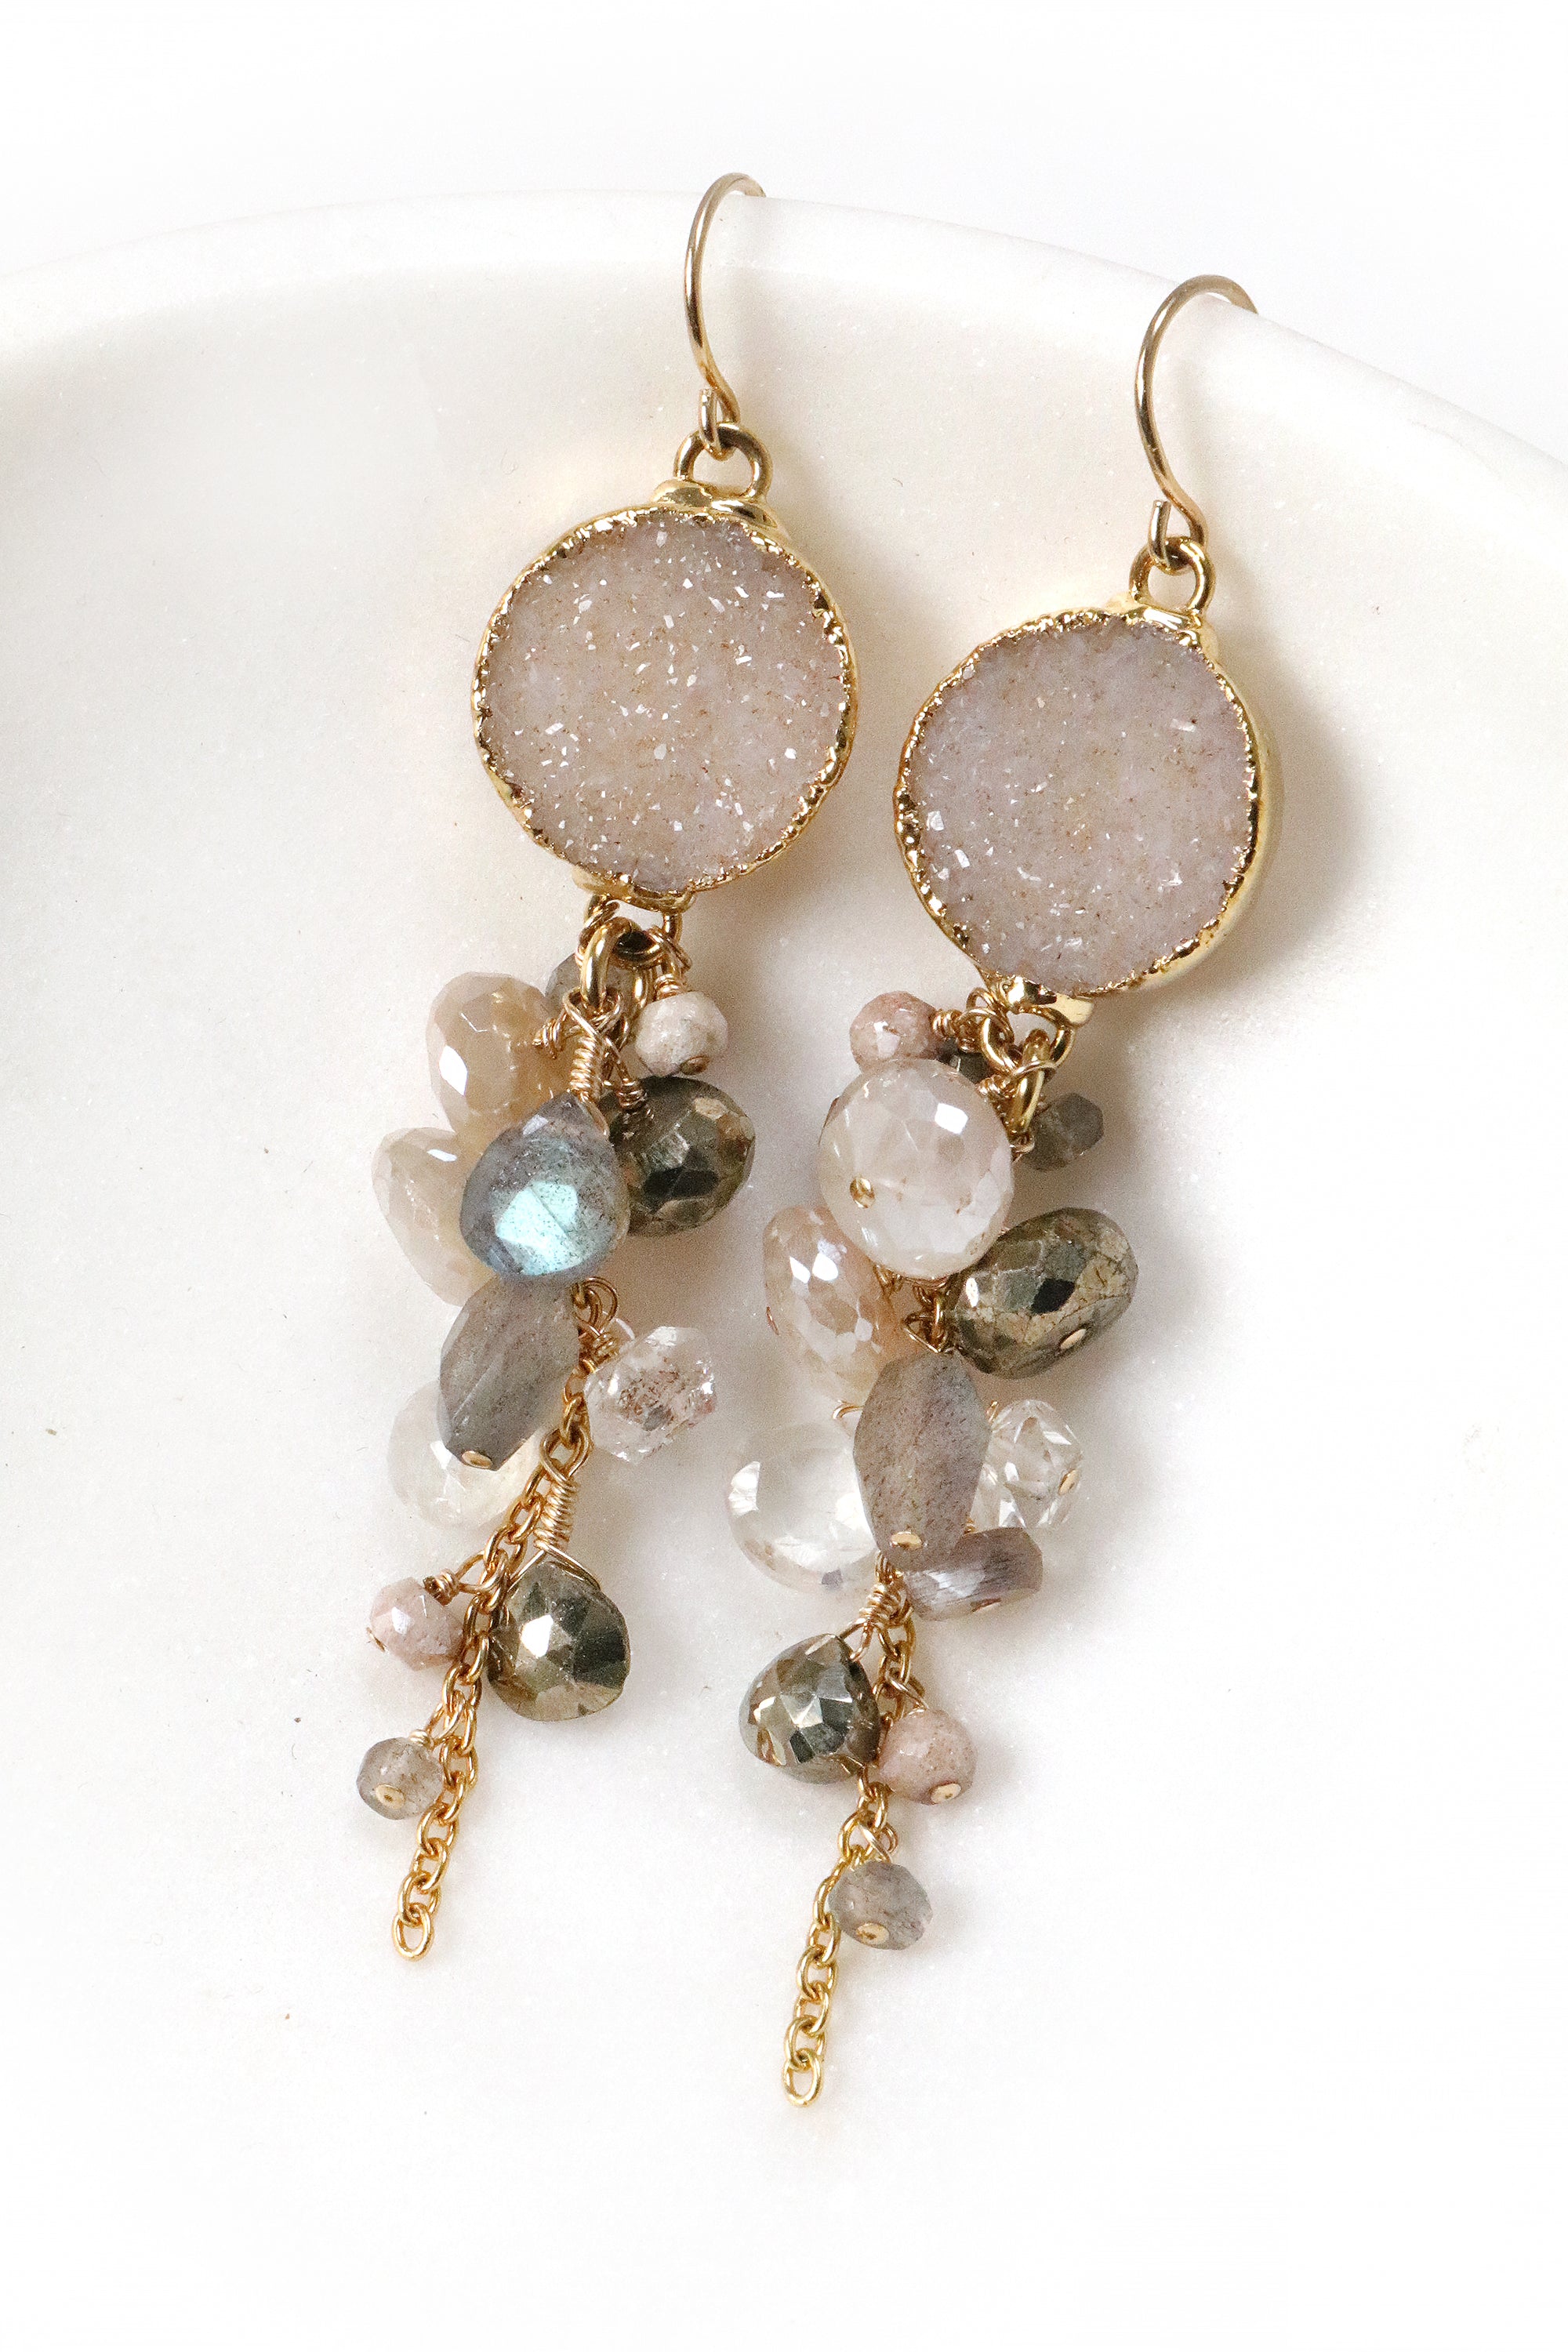 Gemstone and Druzy Cluster Earrings